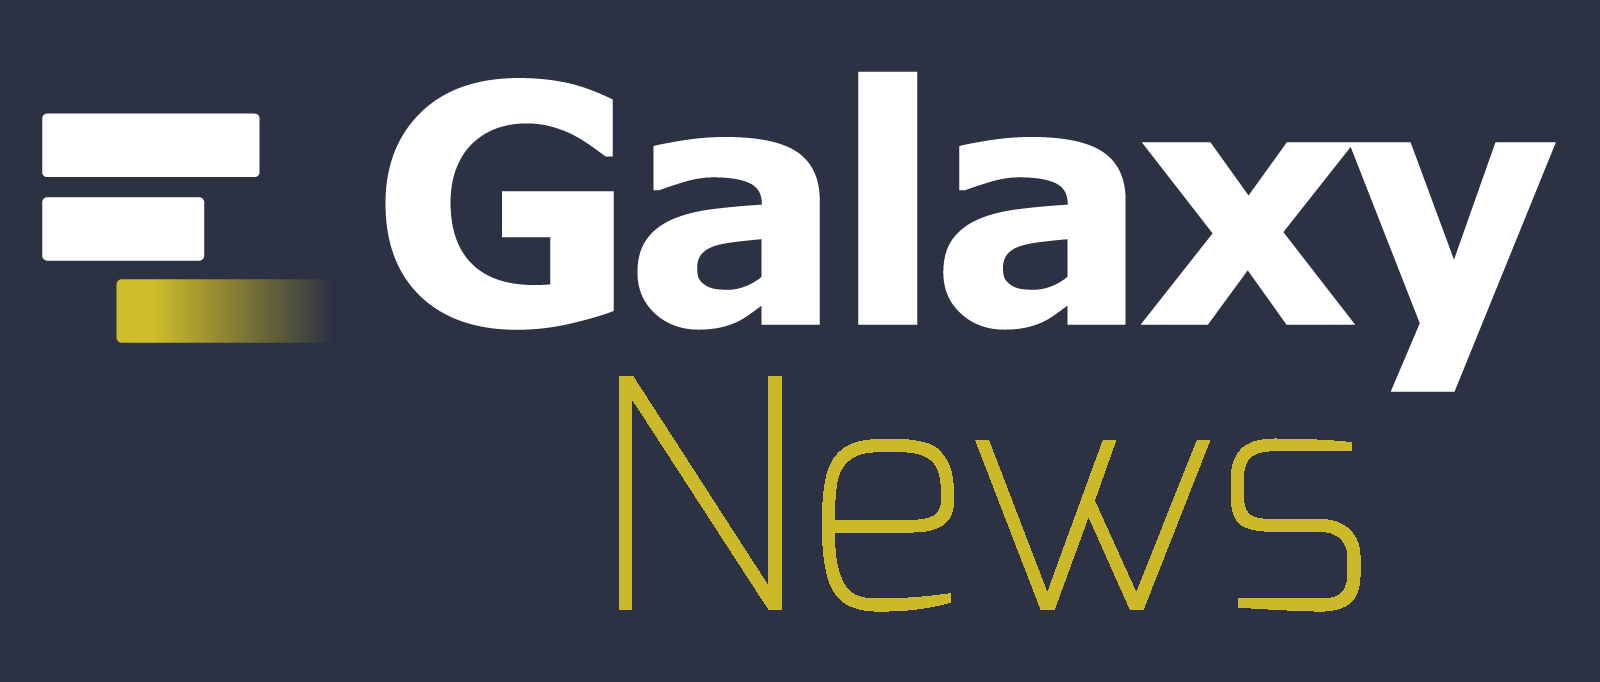 Galaxy News logo on dark blue background with Galaxy logo and words 'Galaxy News'